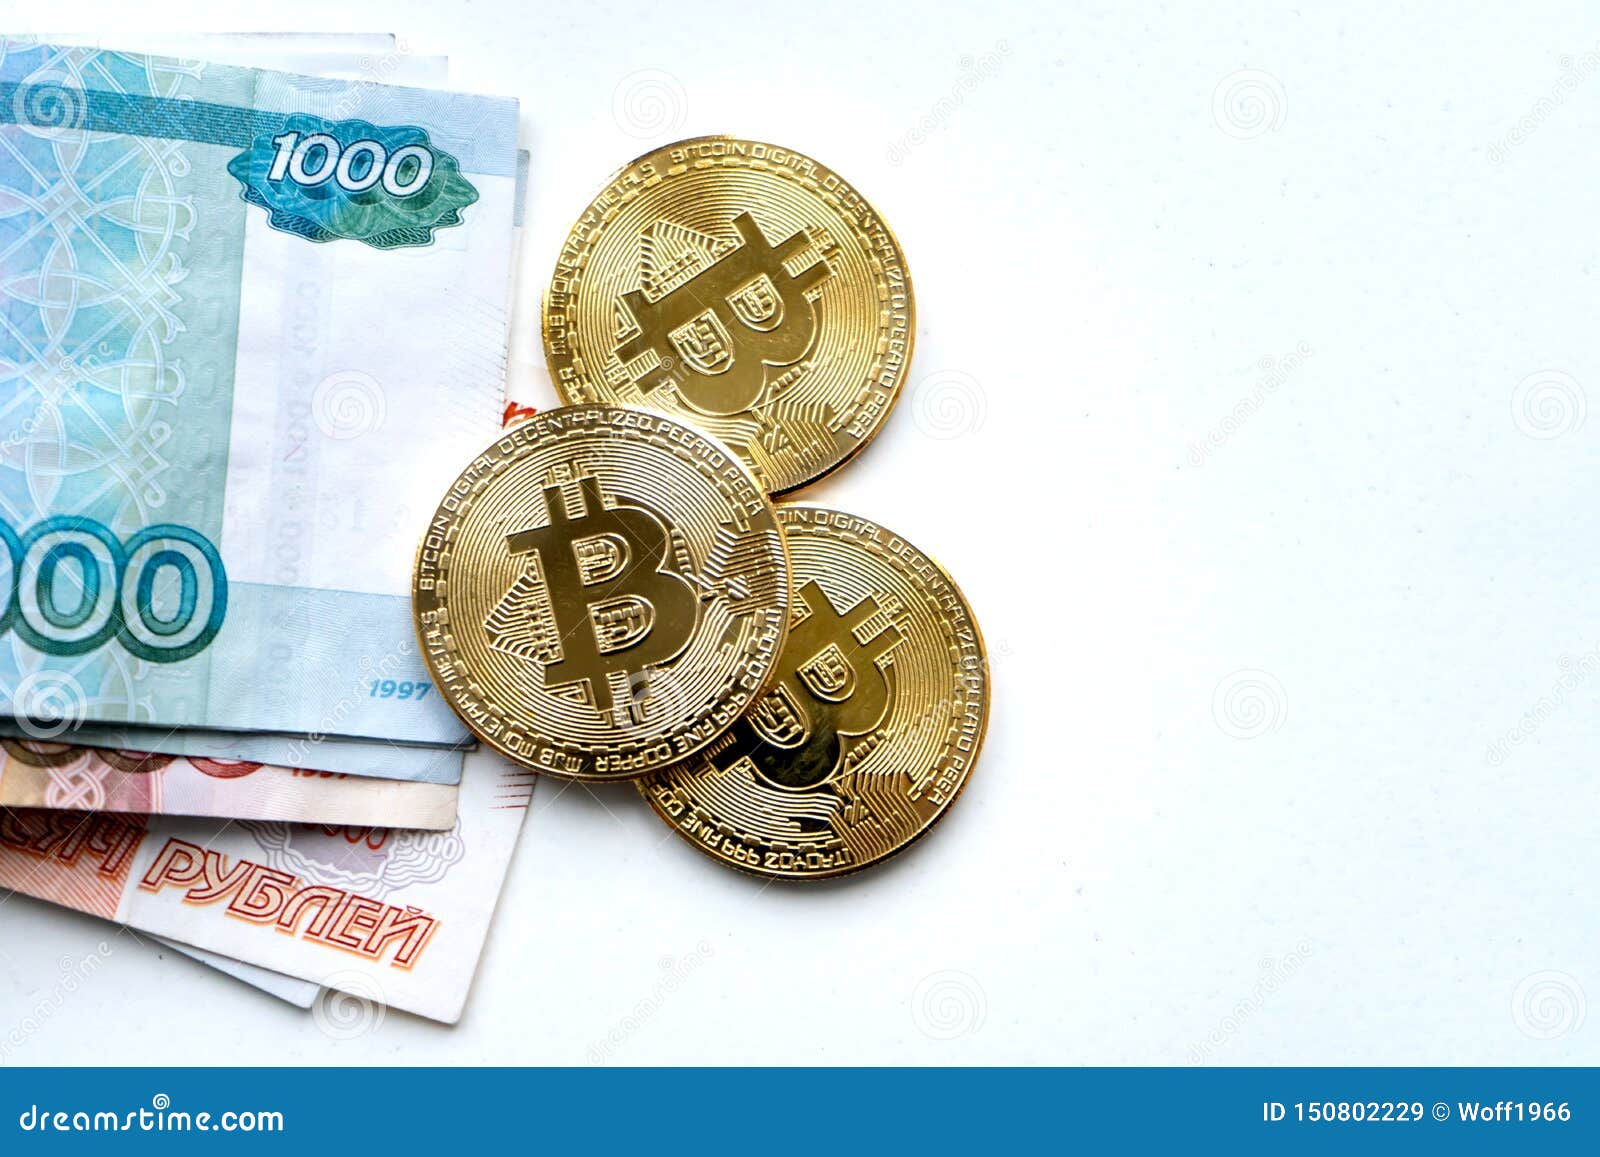 Из рублей в bitcoin комиссия в биткоине сейчас